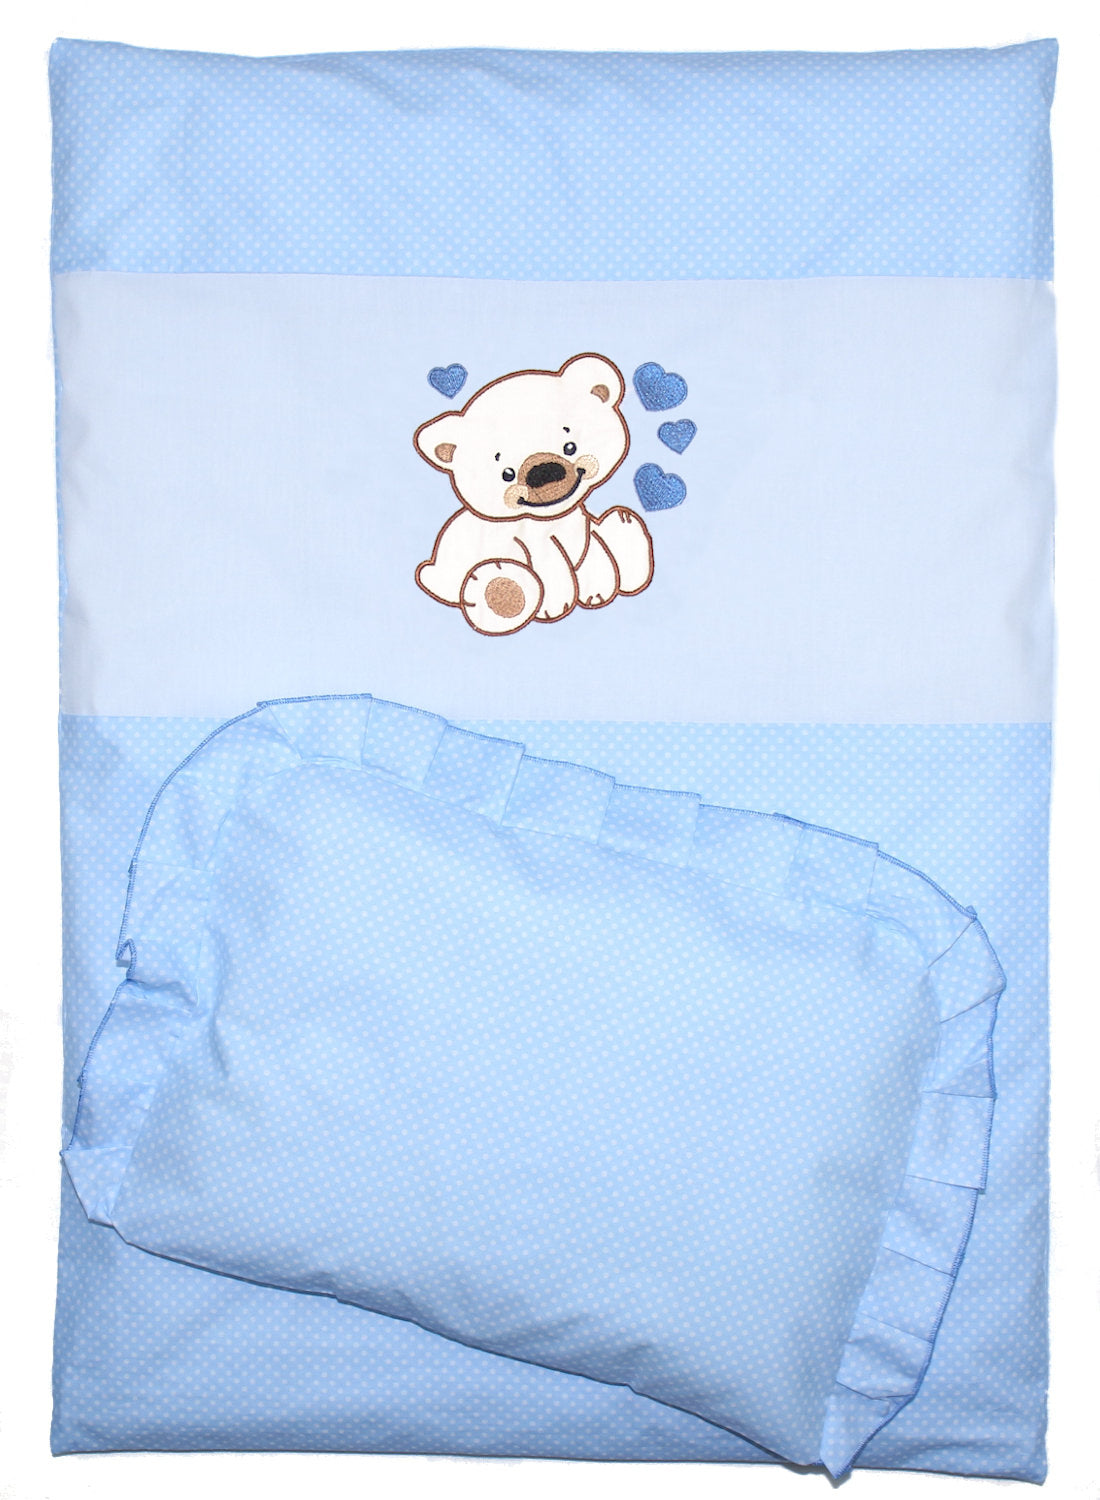 2- 4tlg Kinderwagenset - Bärchen mit Herzen - Punkten Blau- Bettwäsche für Kinderwagen Bezüge Decke Kissen